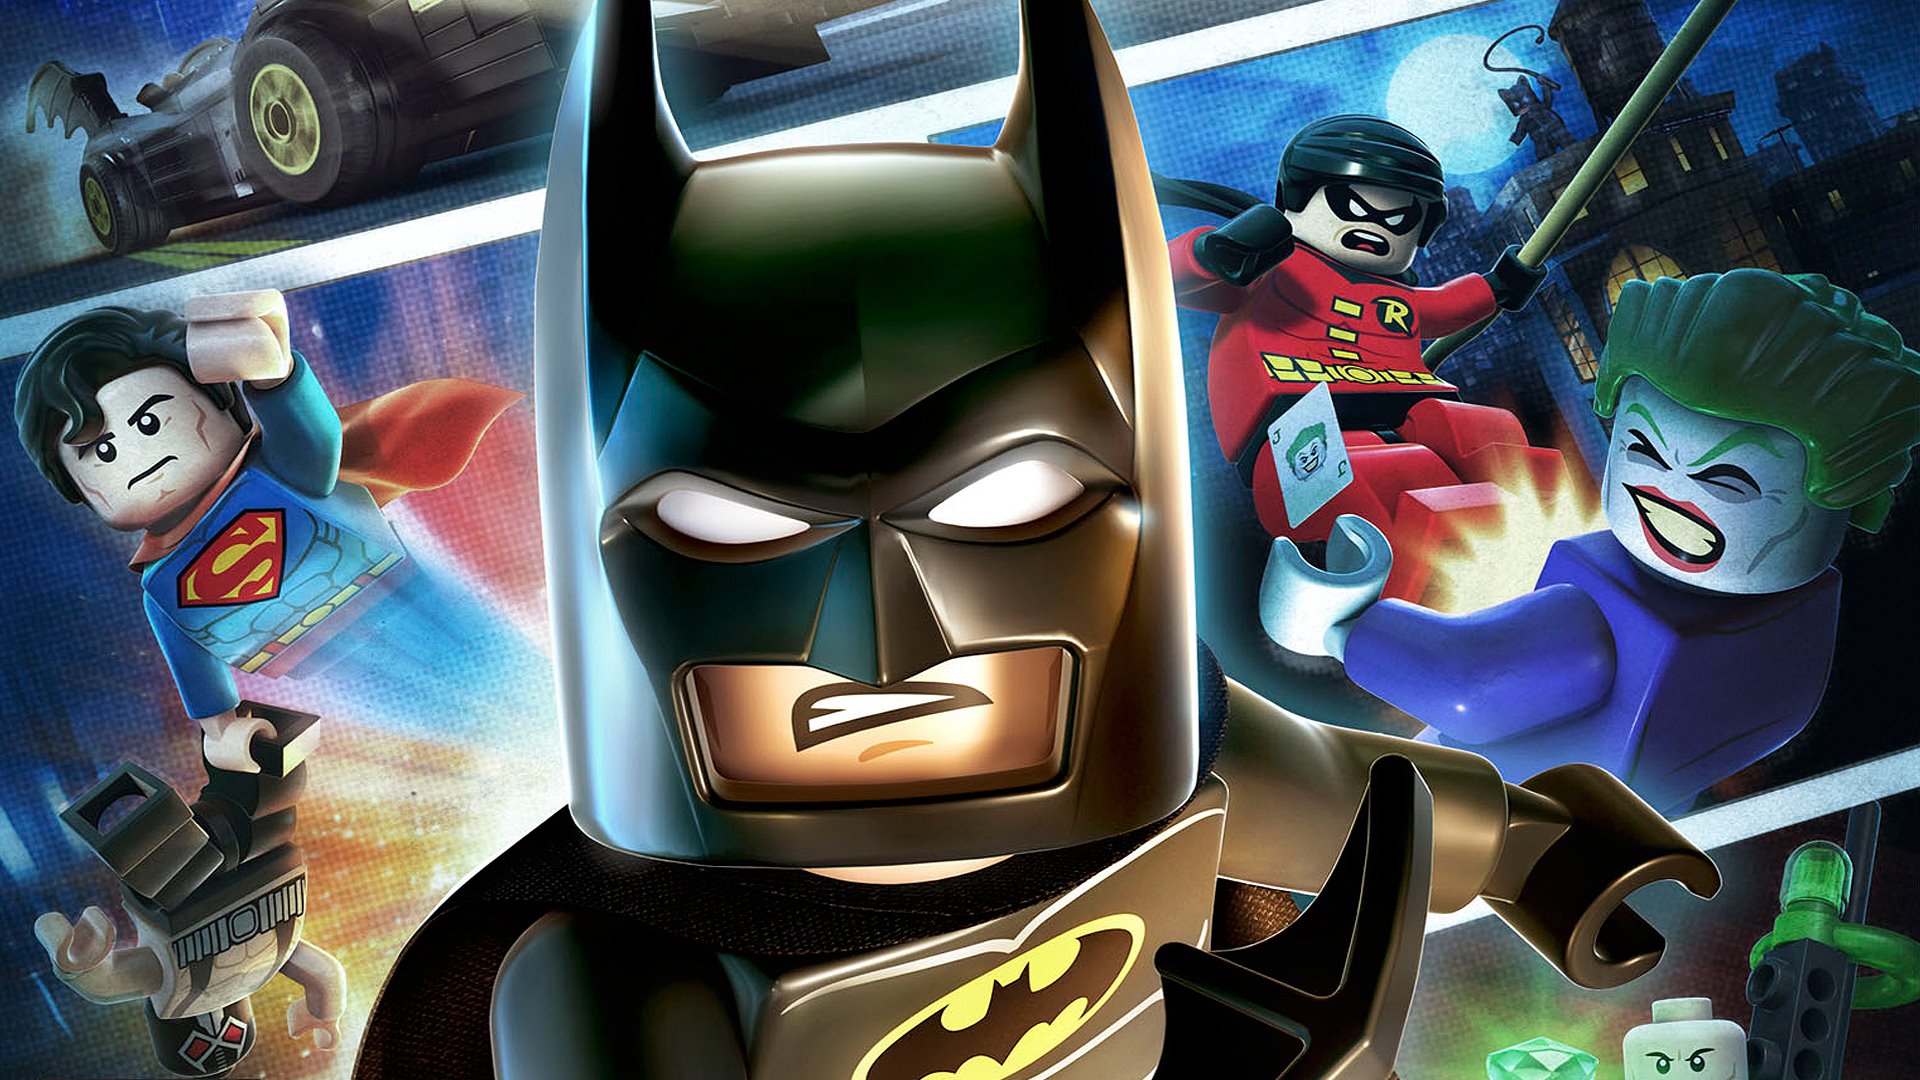 lego batman 2: dc super heroes, video game, batman, joker, robin (dc comics), superman, lego